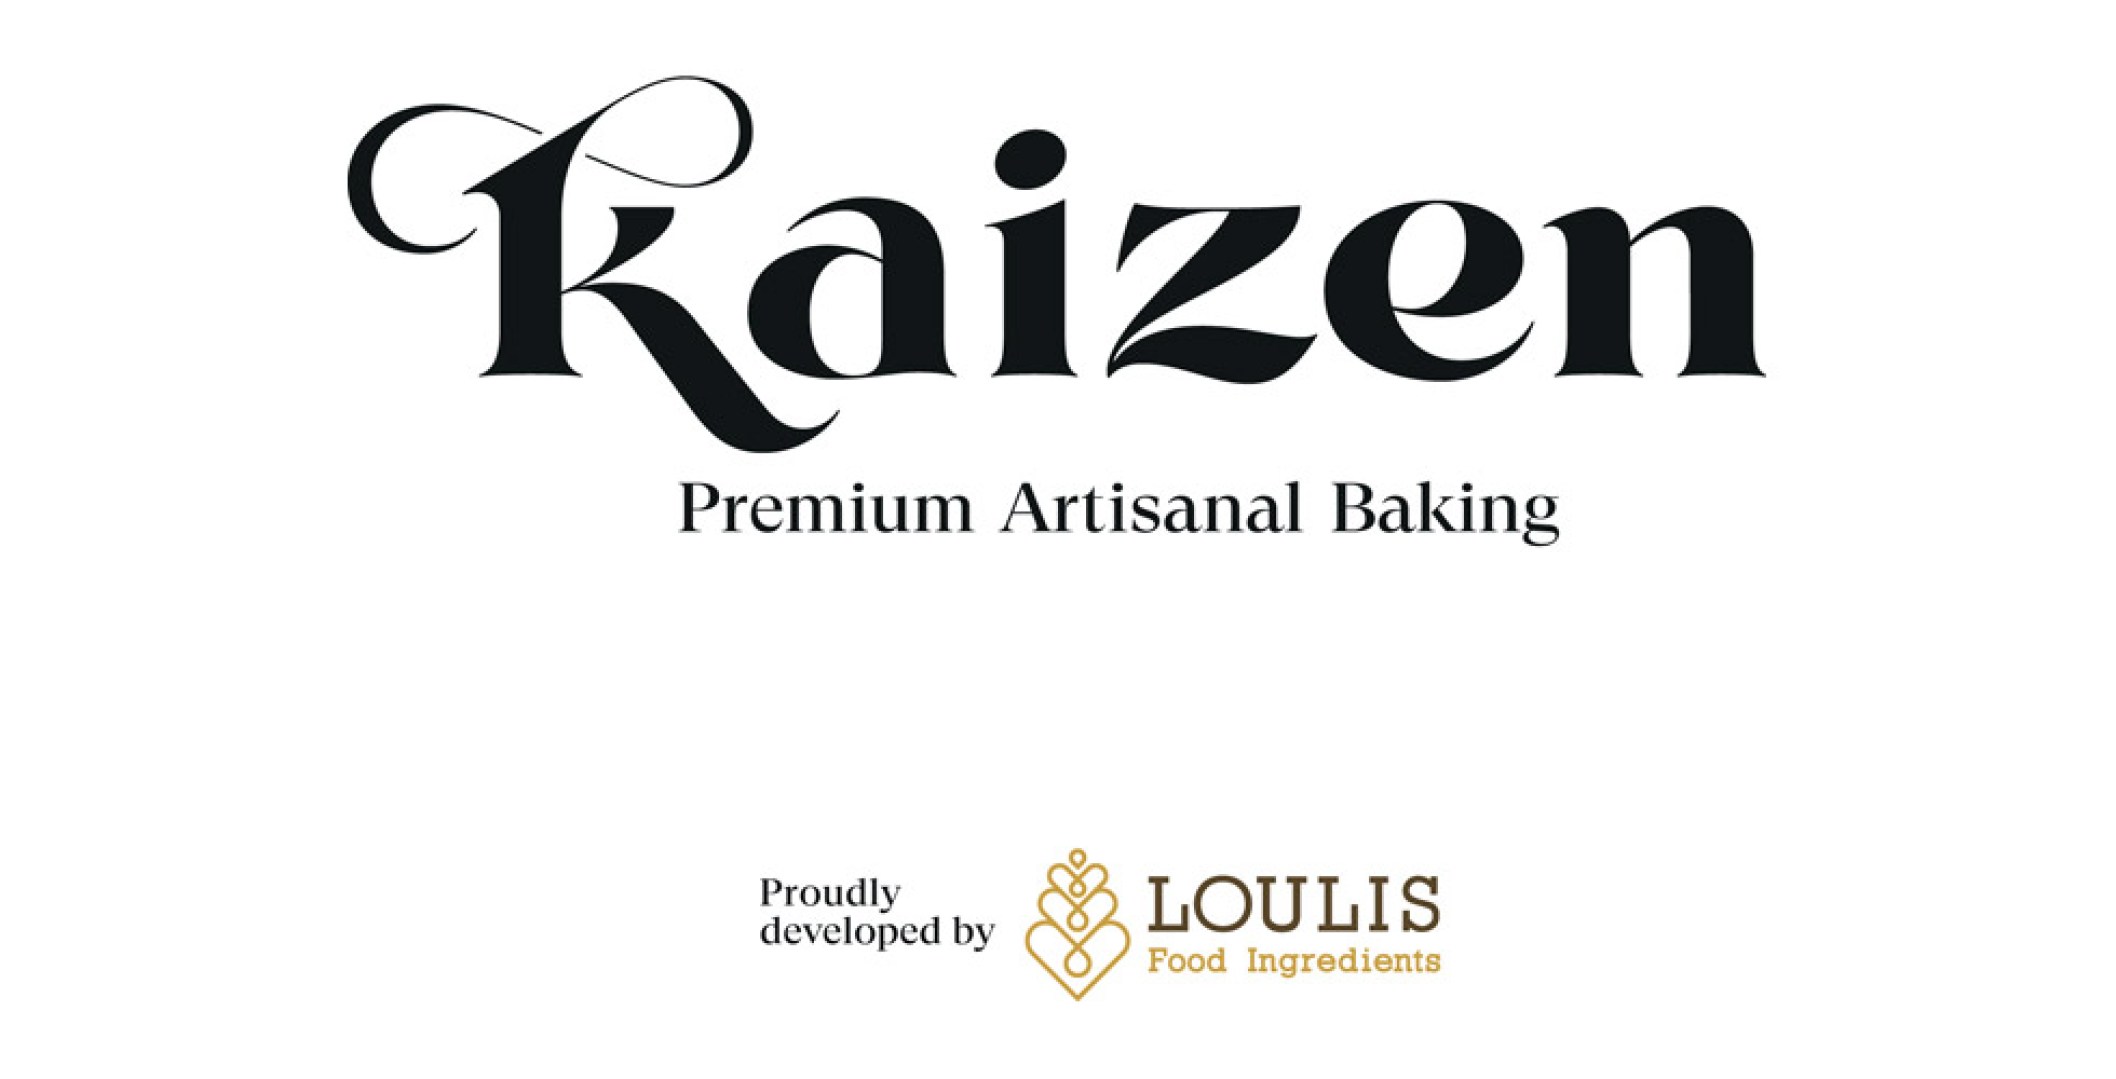 Loulis_Food_Ingredients_Kaizen-15